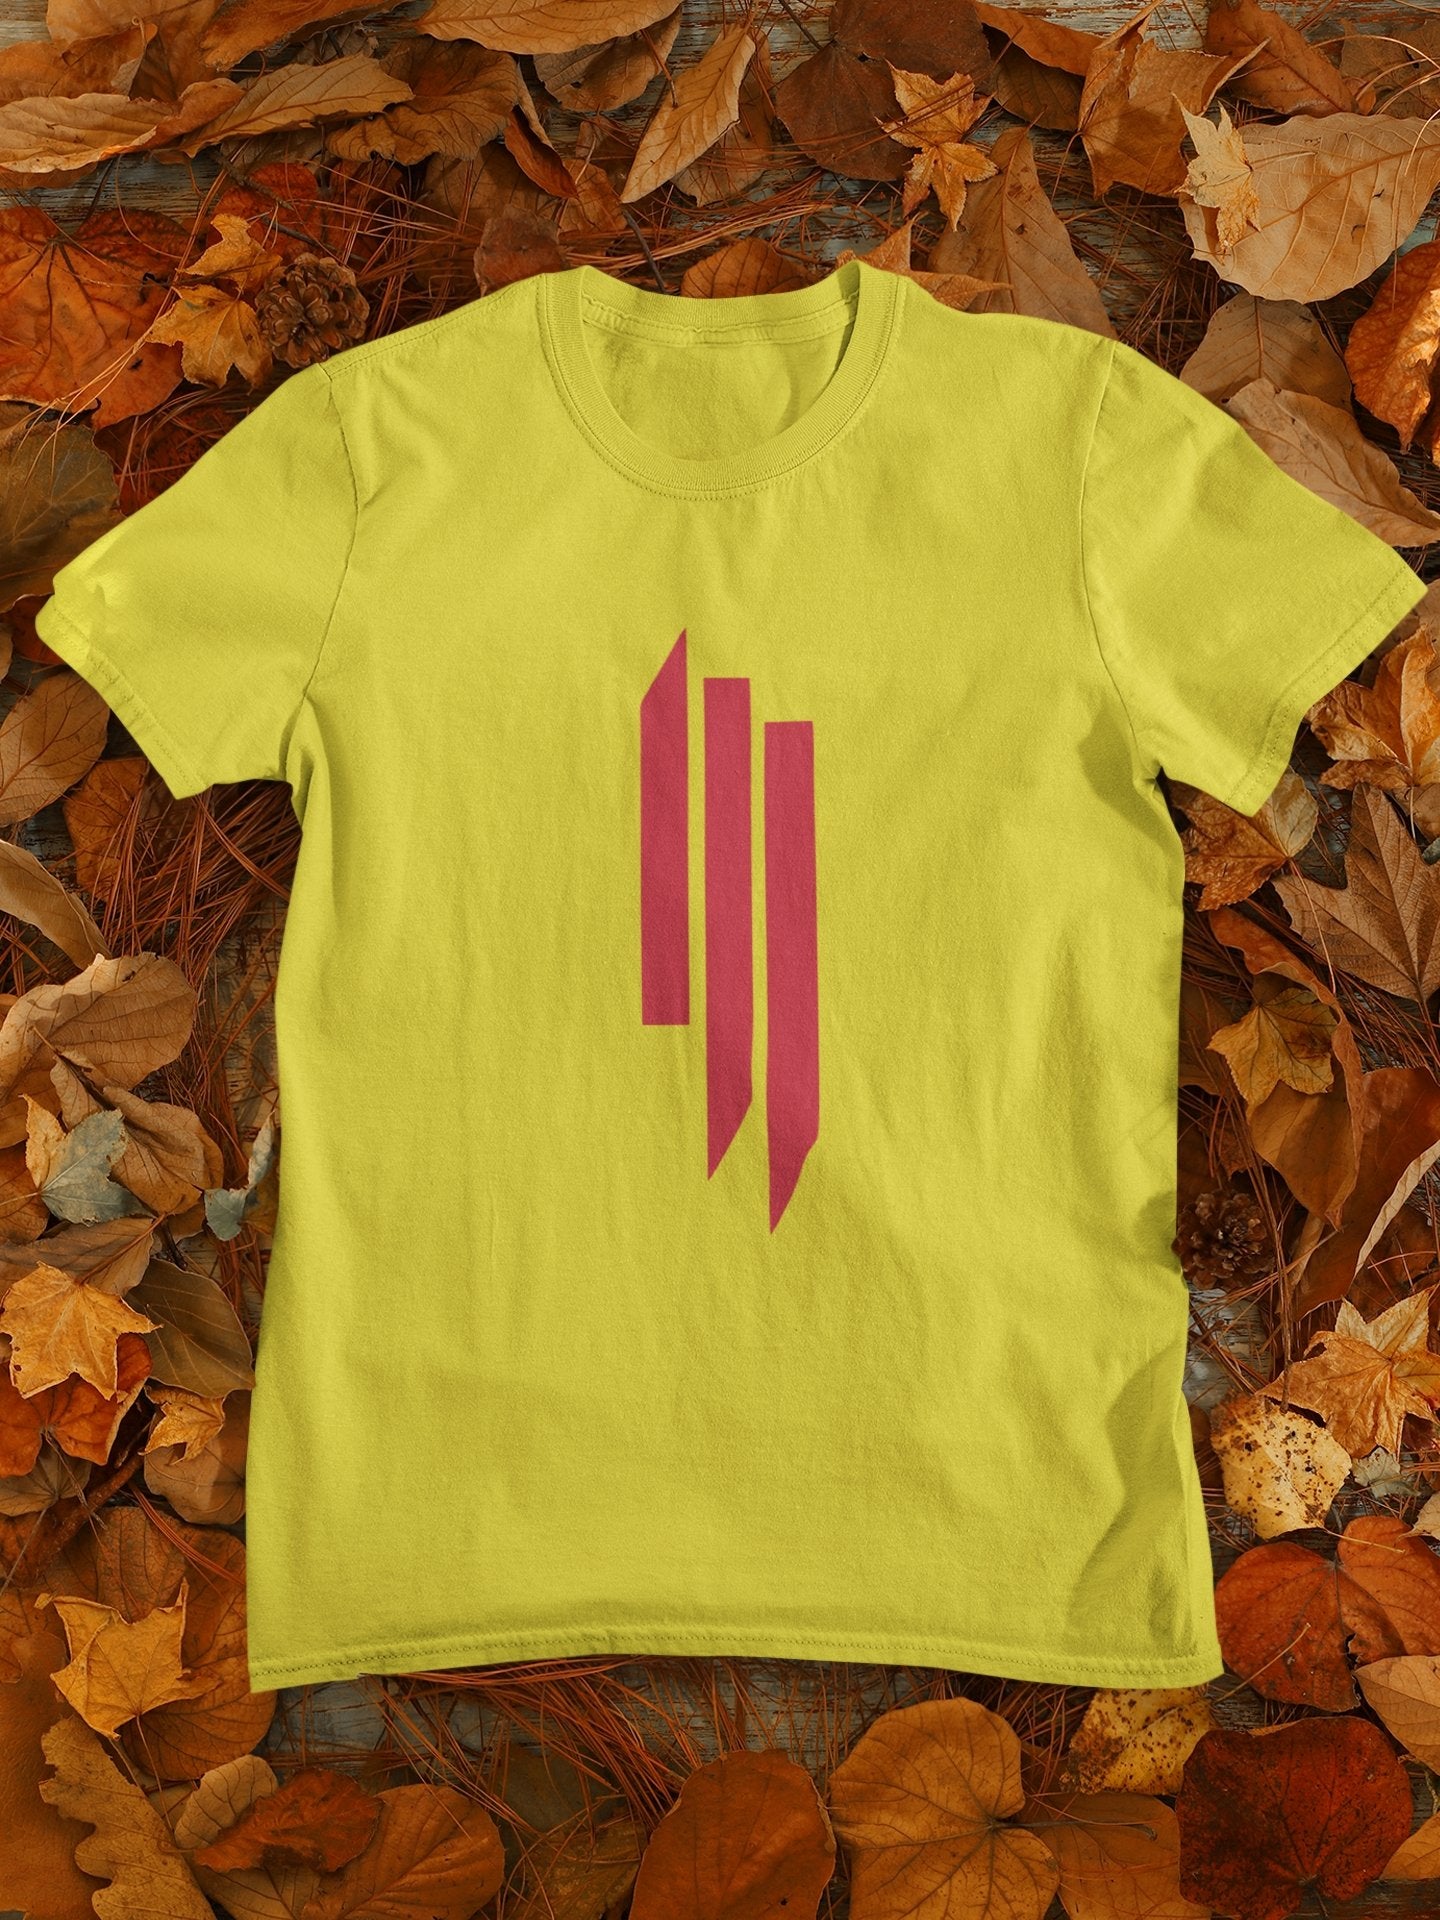 Skrls Typography Women Half Sleeves T-shirt- FunkyTeesClub - Funky Tees Club